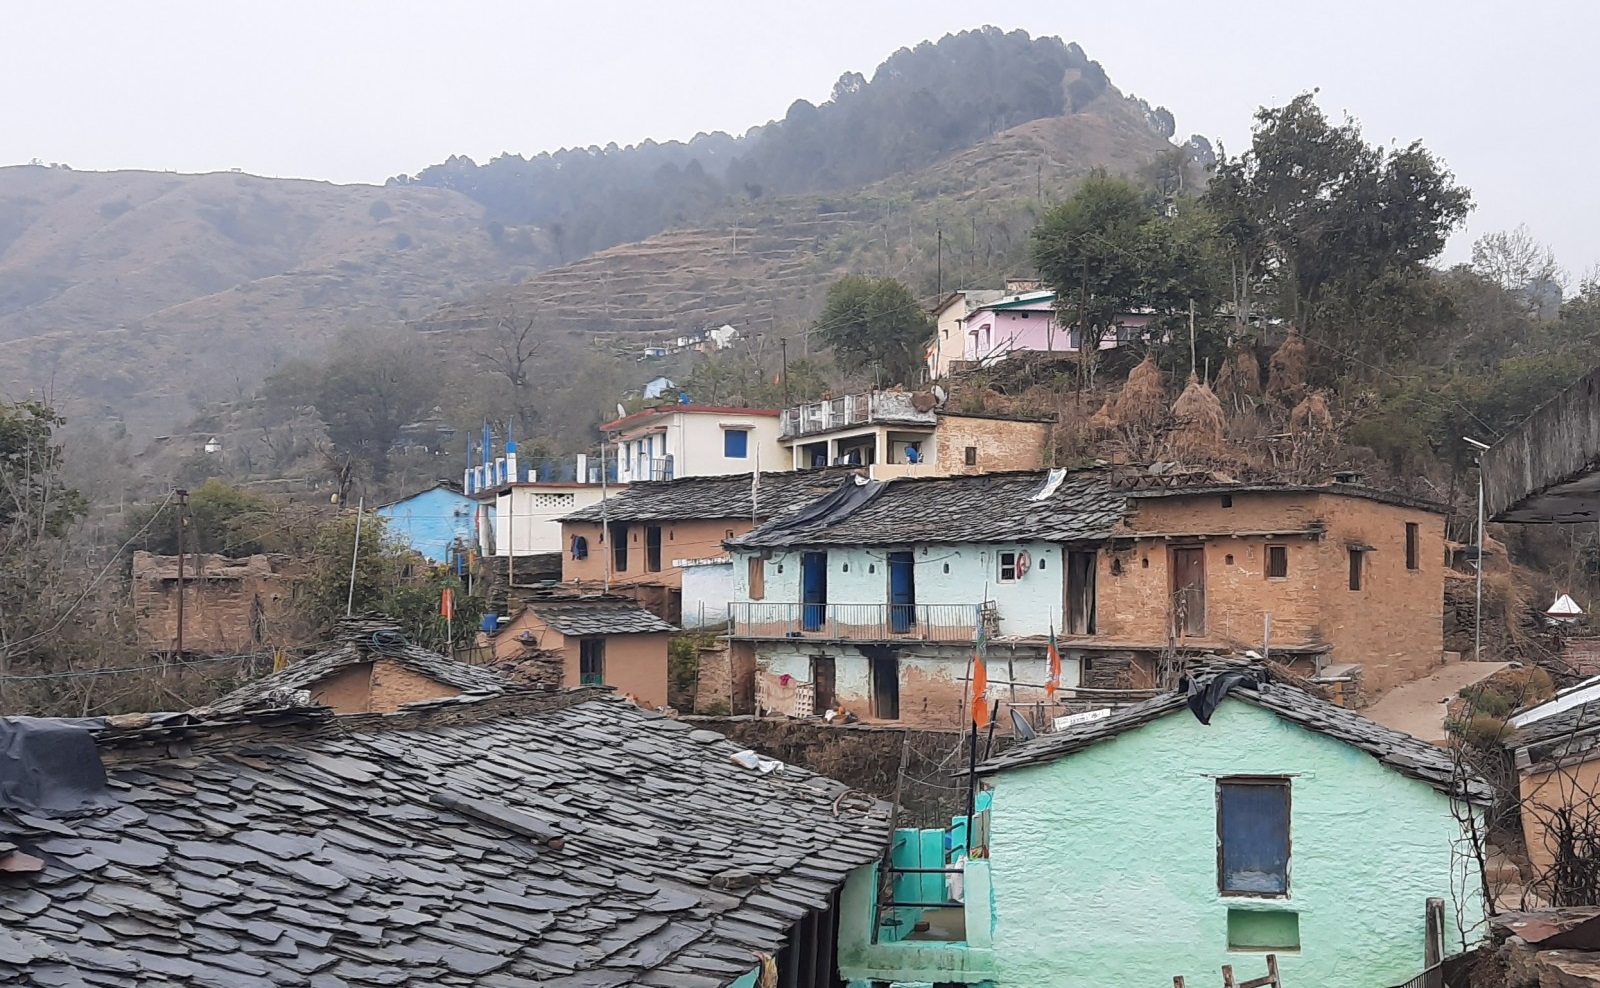 Musansaun village, Pauri Garhwal